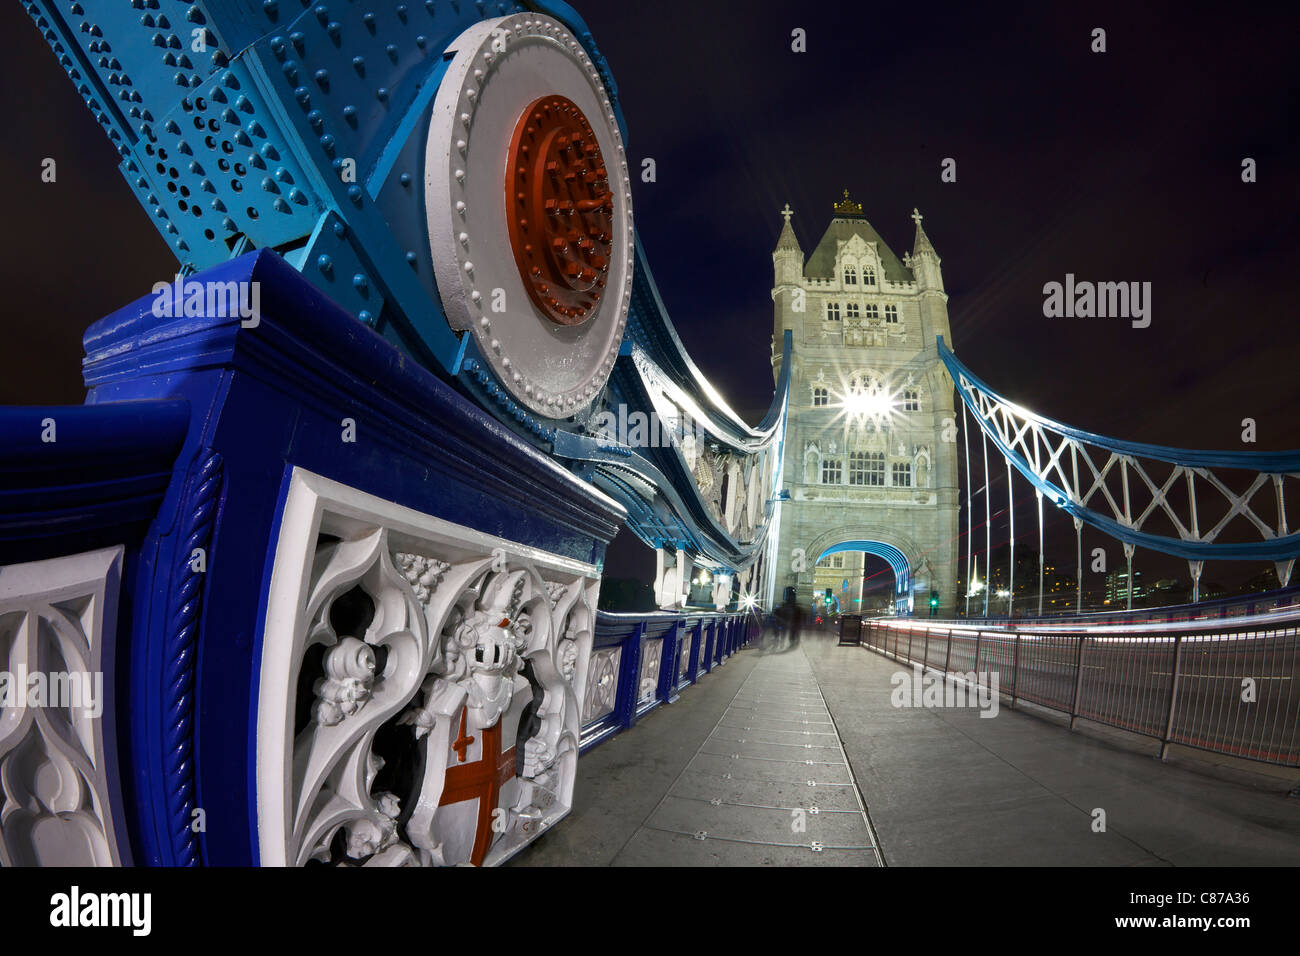 Puente de la torre iluminada por la noche, la ciudad de Londres, Inglaterra, Reino Unido, Reino Unido, GB, Gran Bretaña, Islas Británicas, Europa Foto de stock